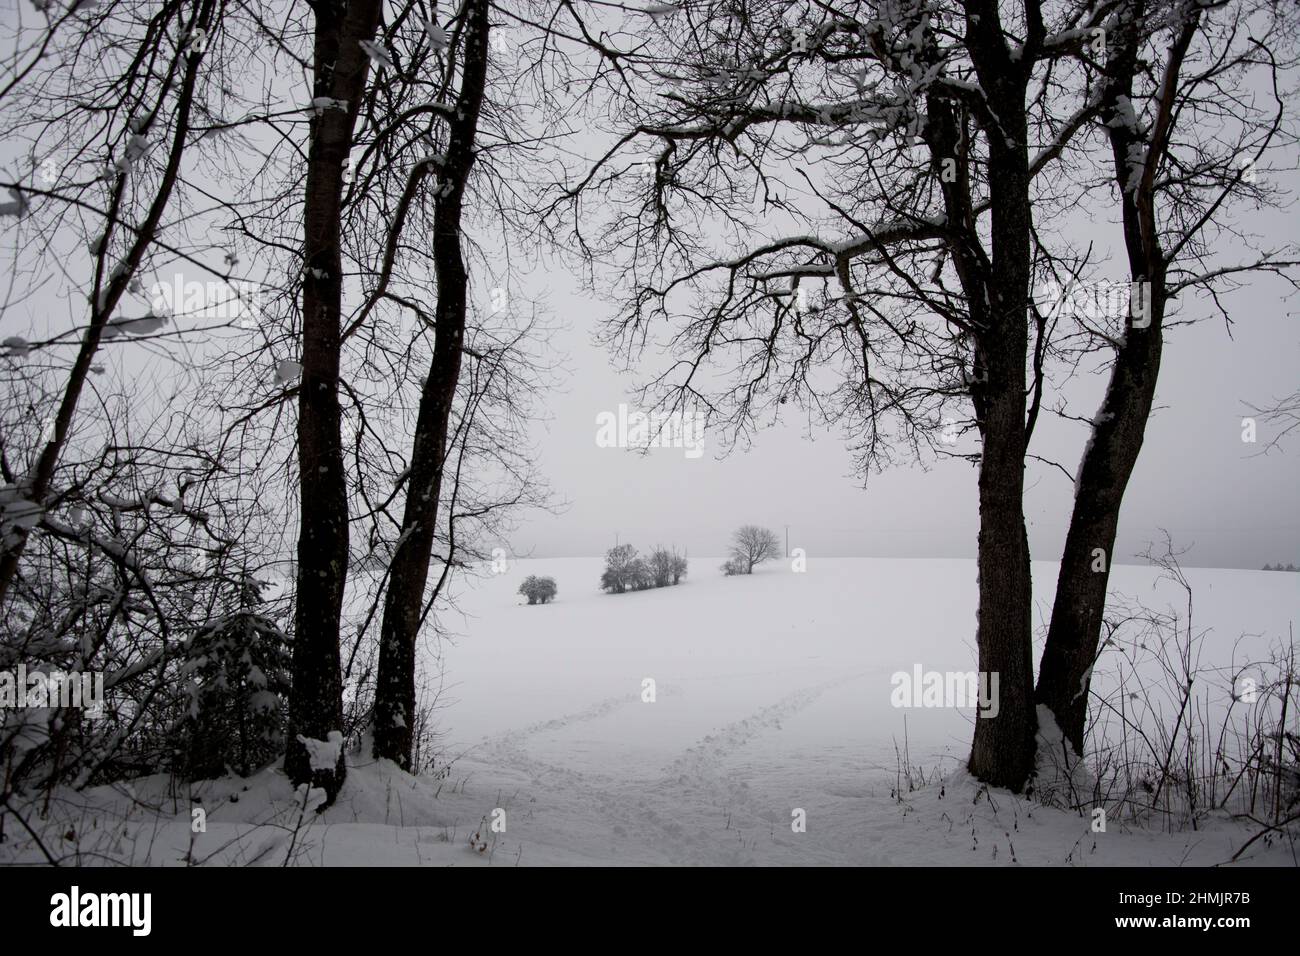 Fussspuren im Schnee Führen in die offene Kulturlandschaft Foto Stock